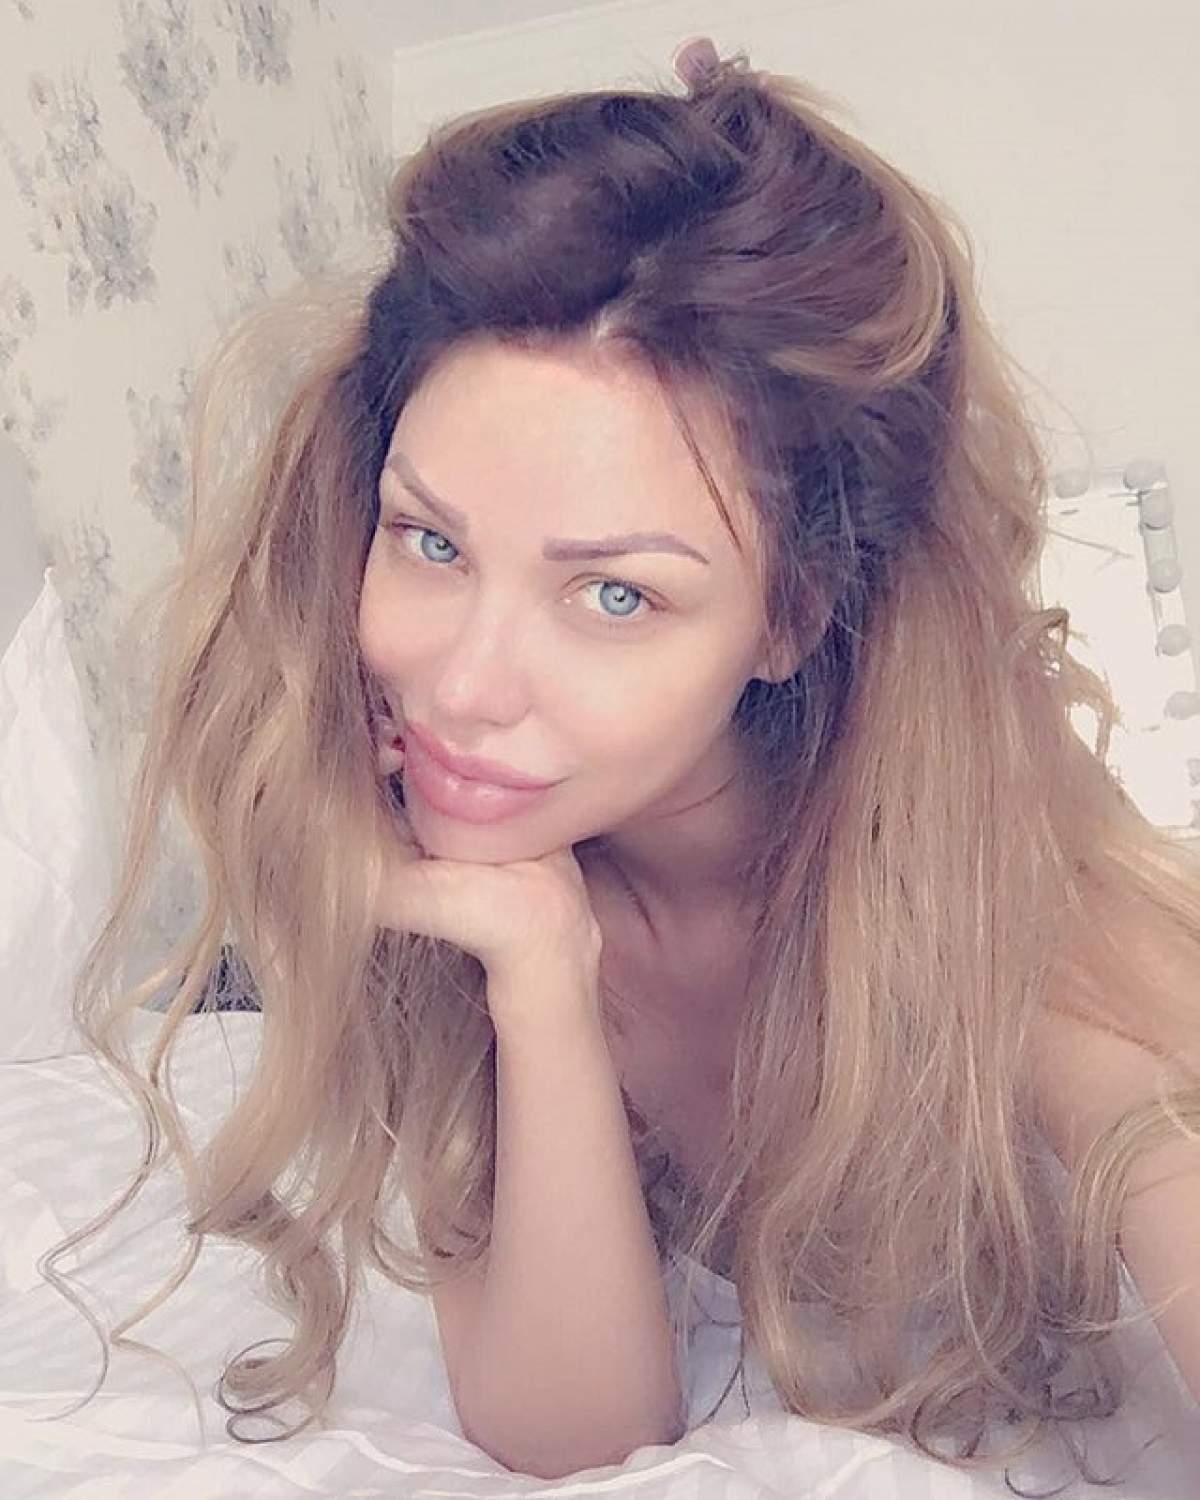 Bianca Drăguşanu, extenuată şi nemachiată: "Cu siguranţă aş putea dormi 30 de ore"